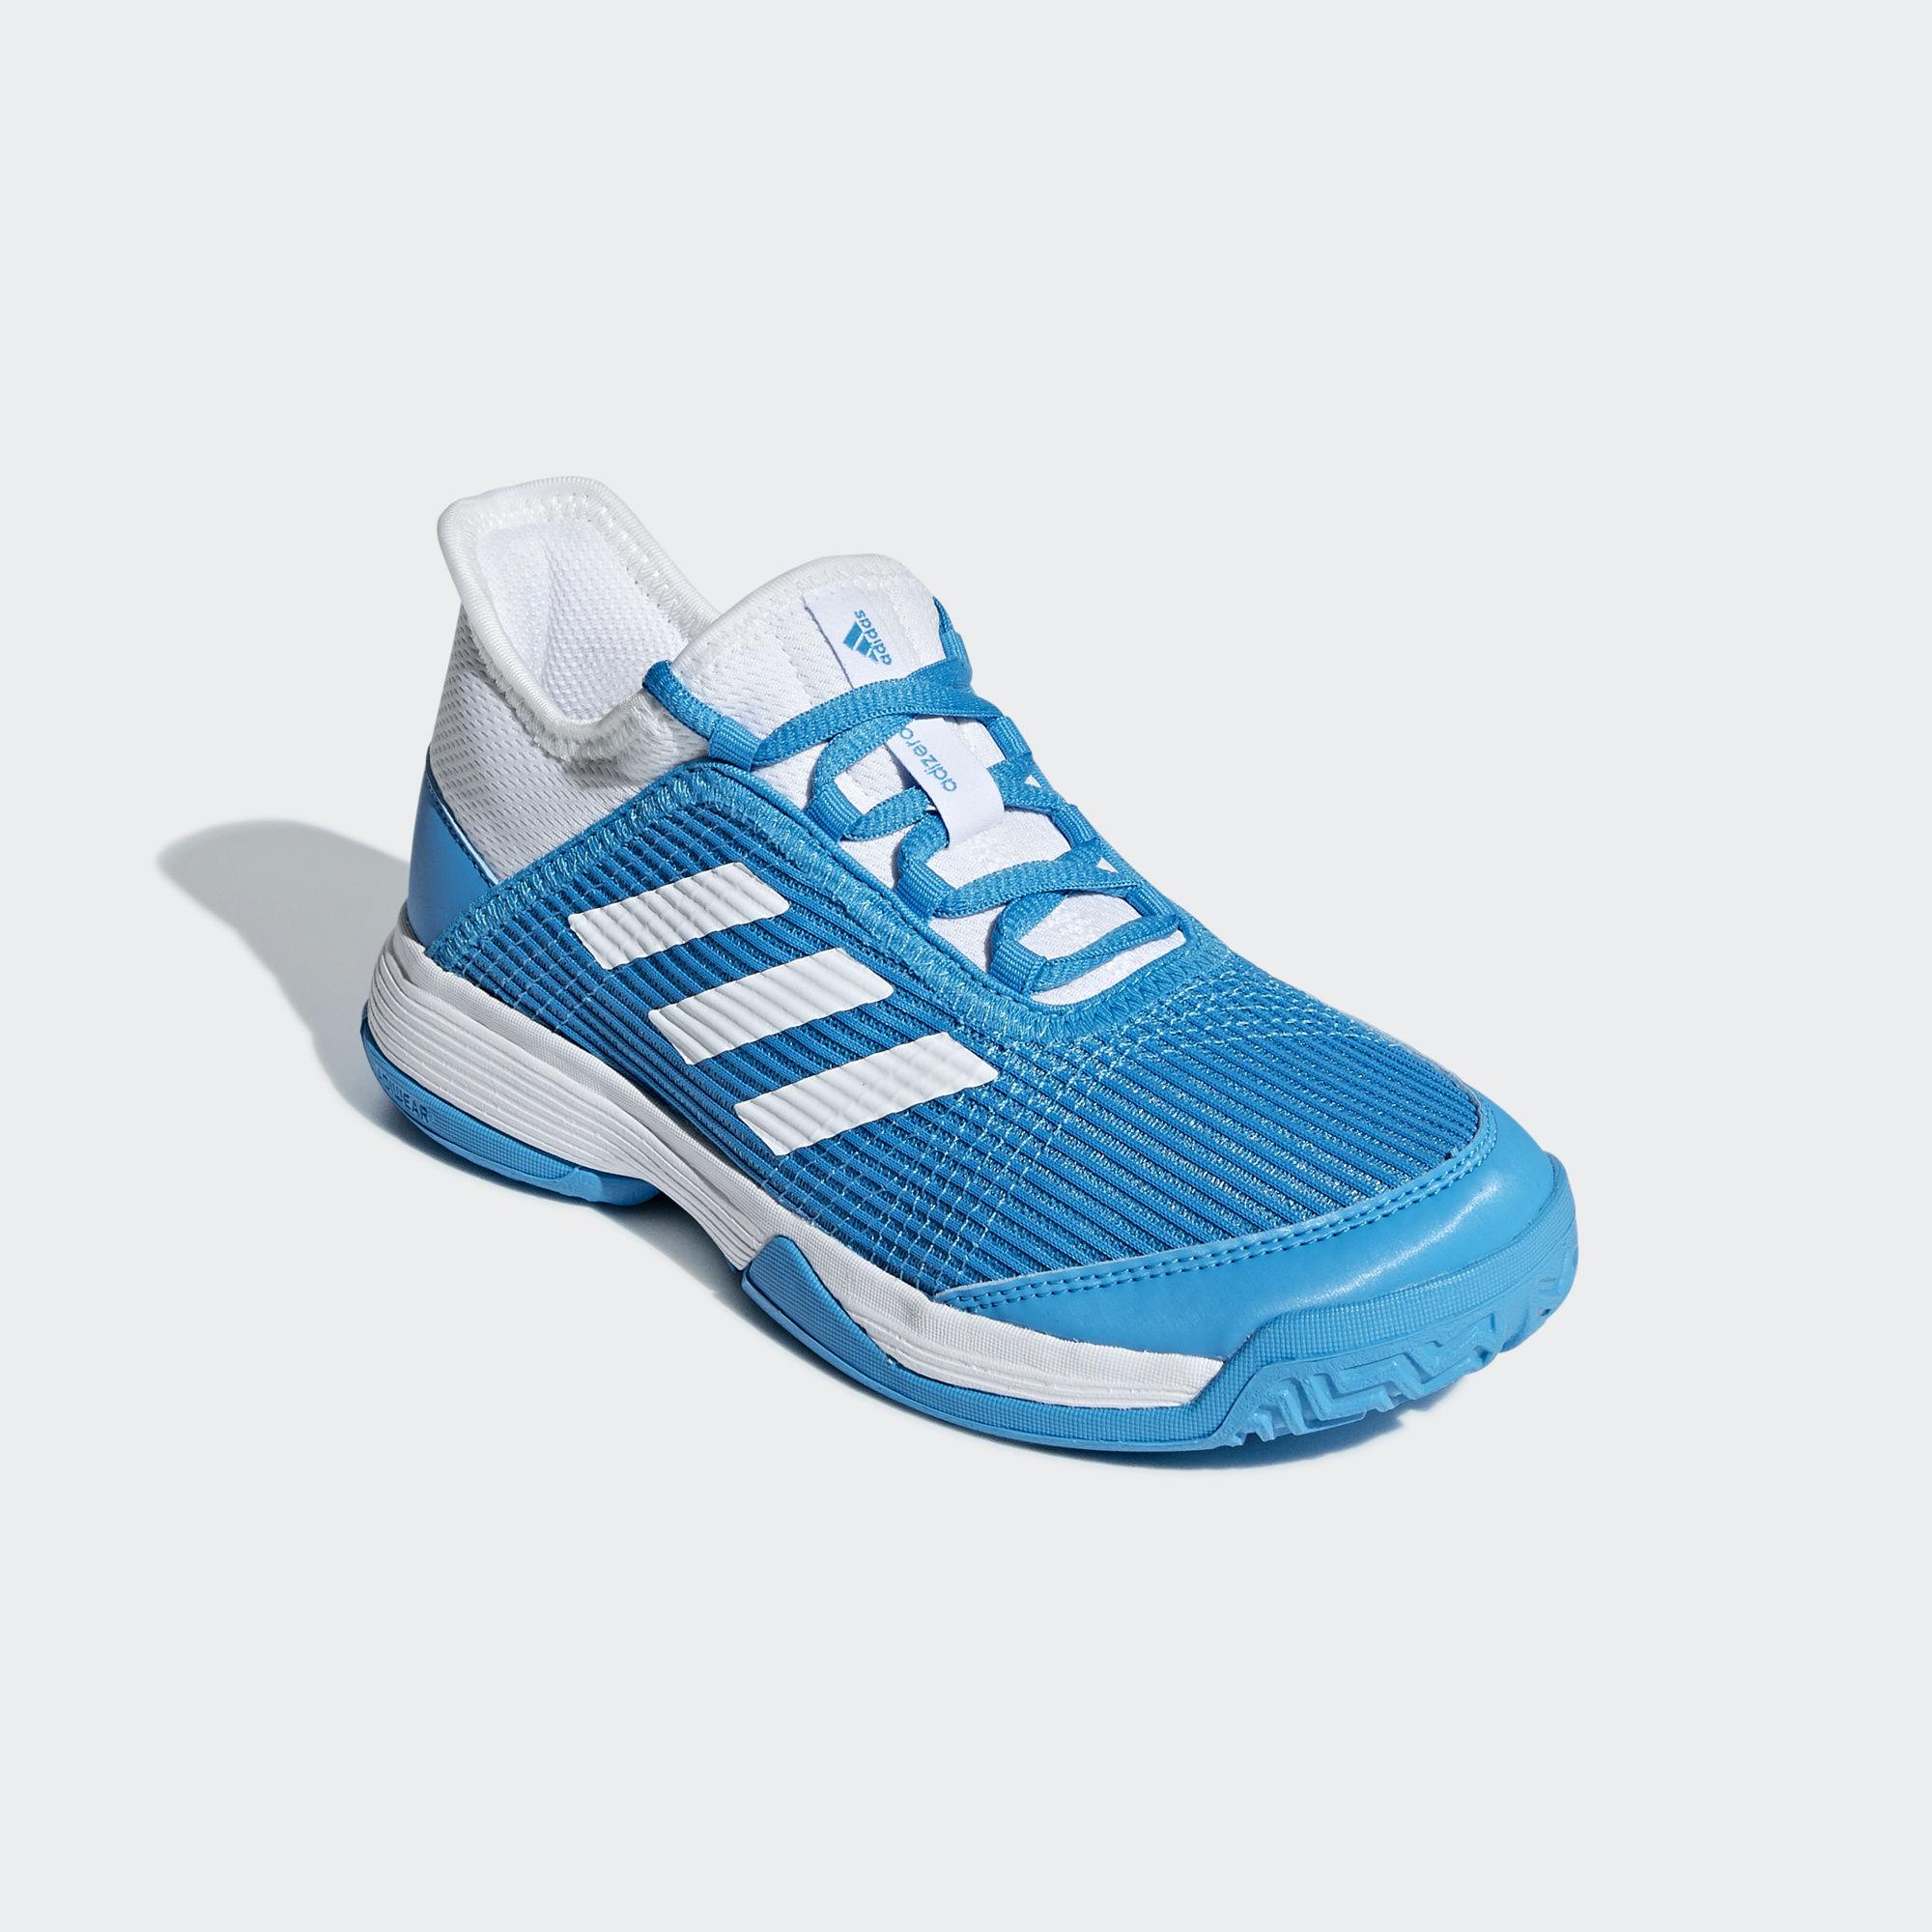  Adidas  Kids Adizero  Club Tennis Shoes  Blue White 